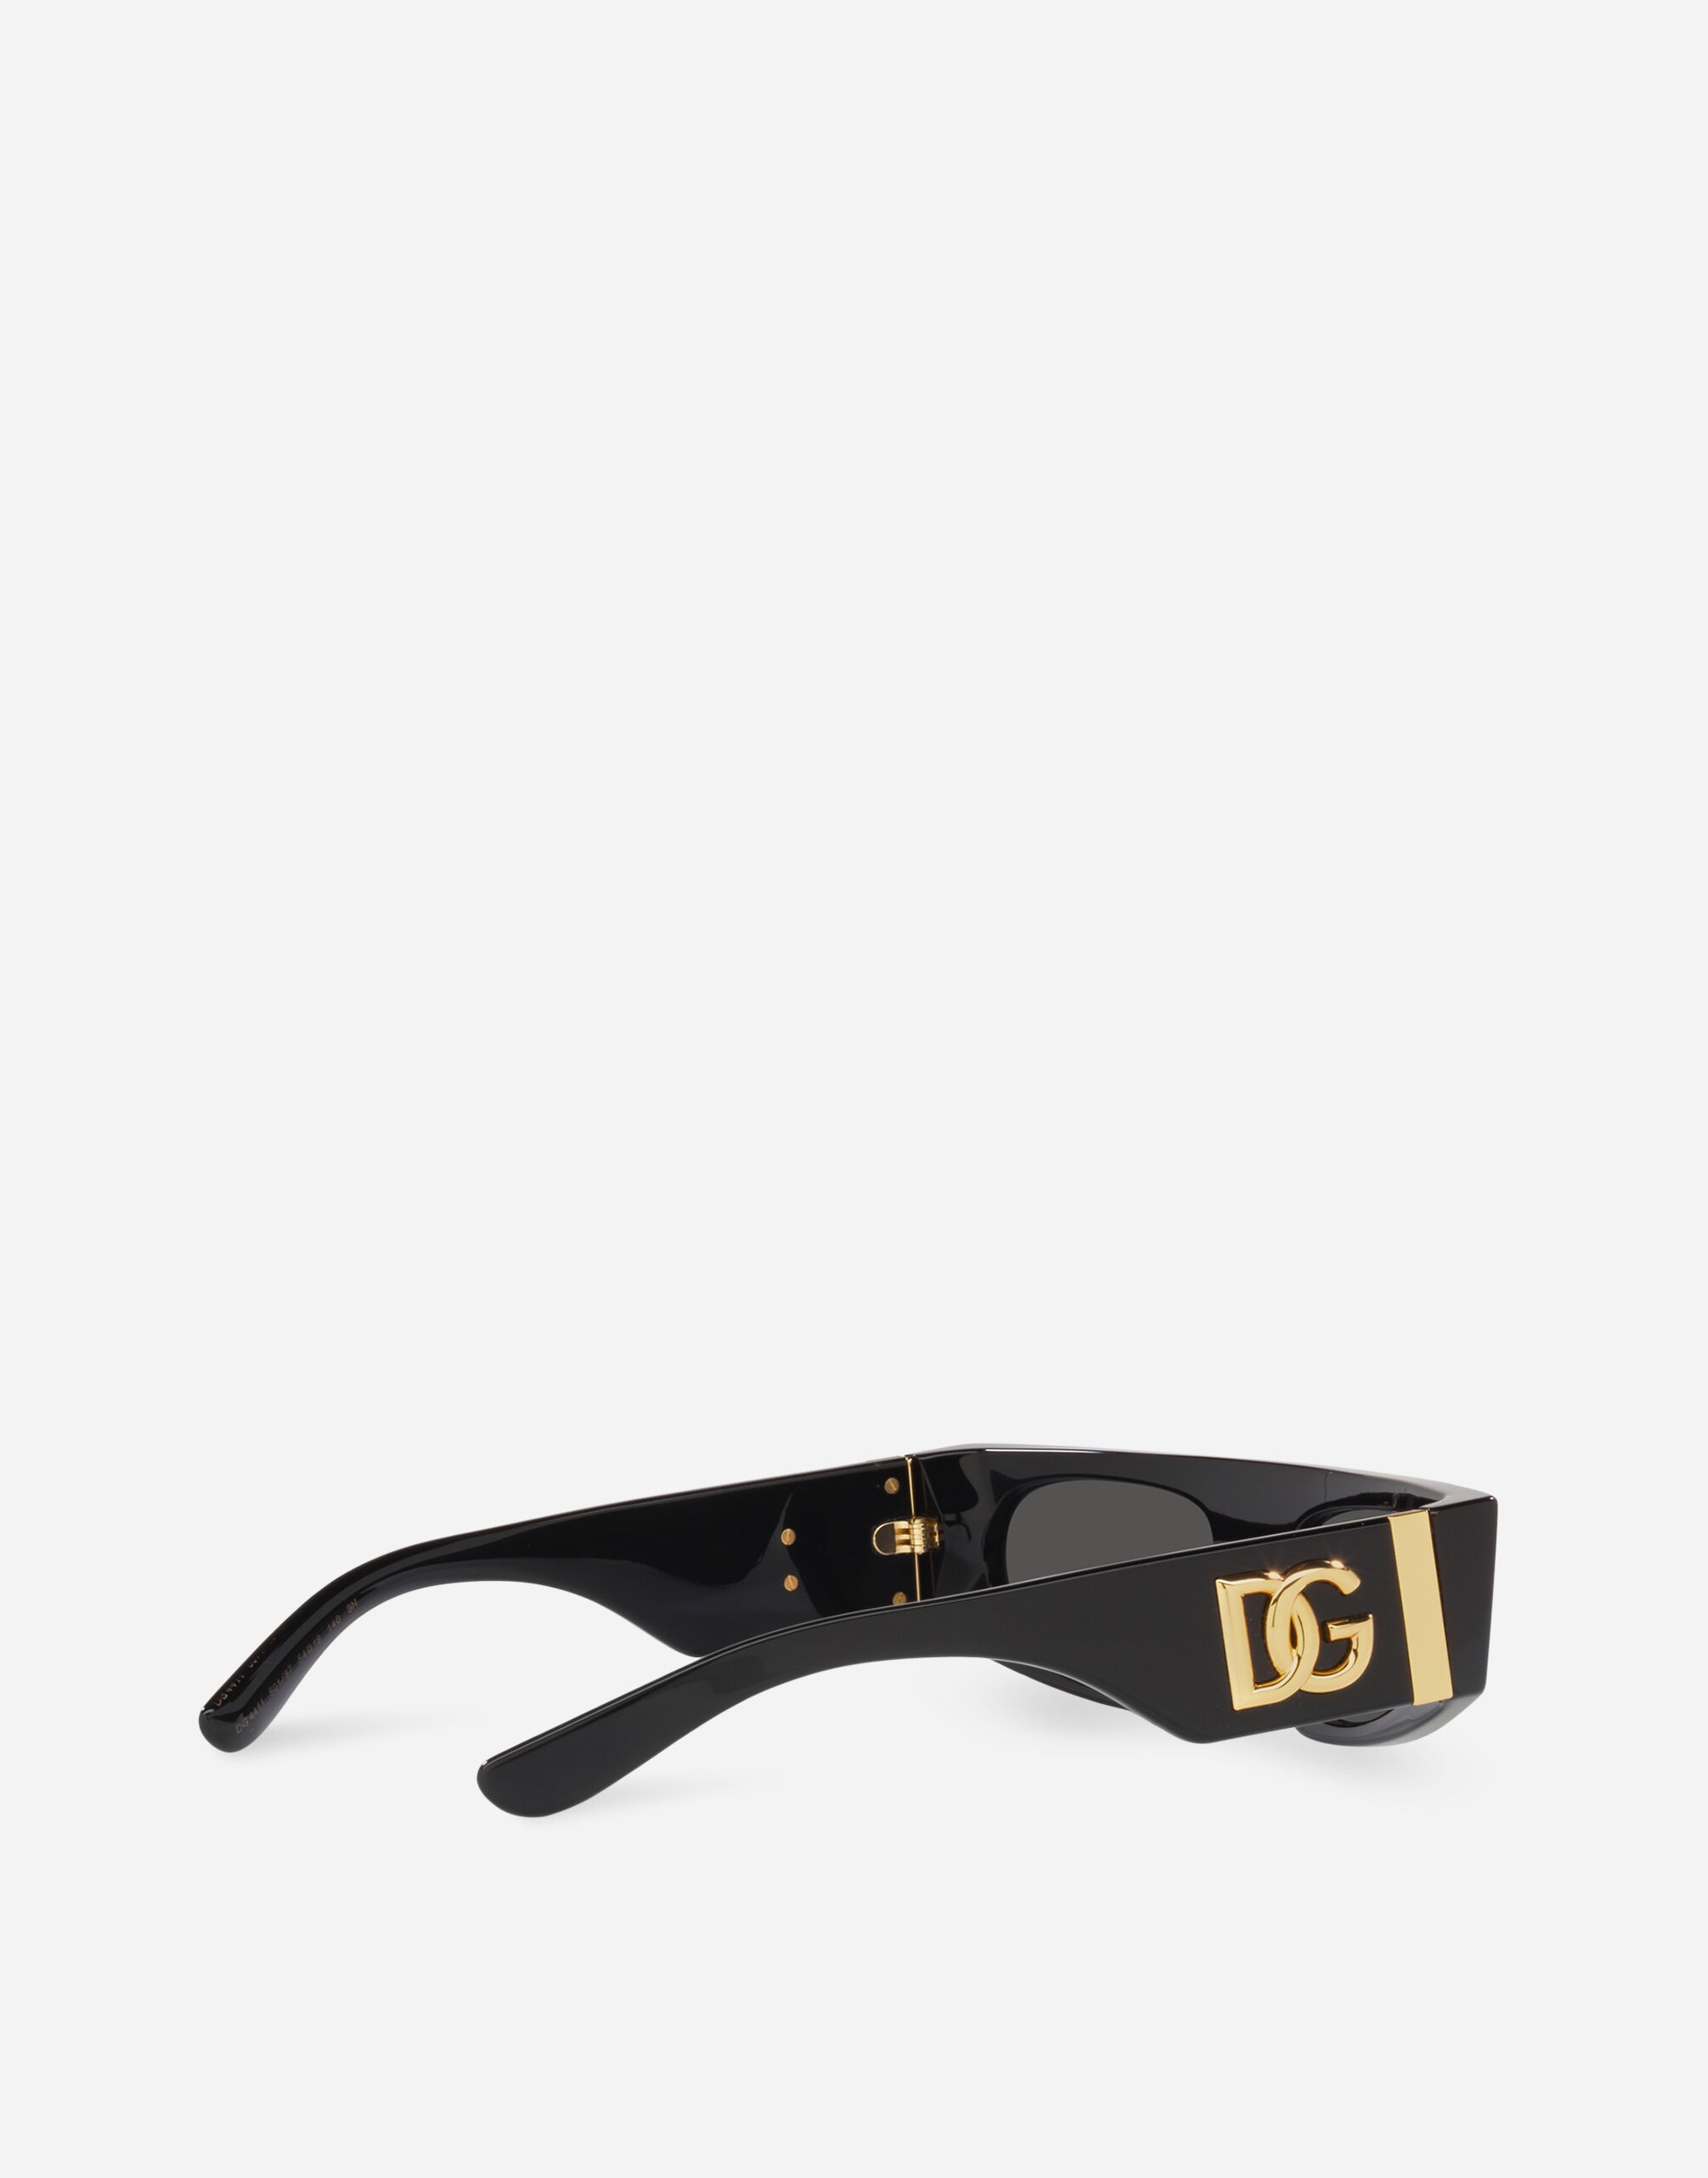 DG Crossed Sunglasses - 4